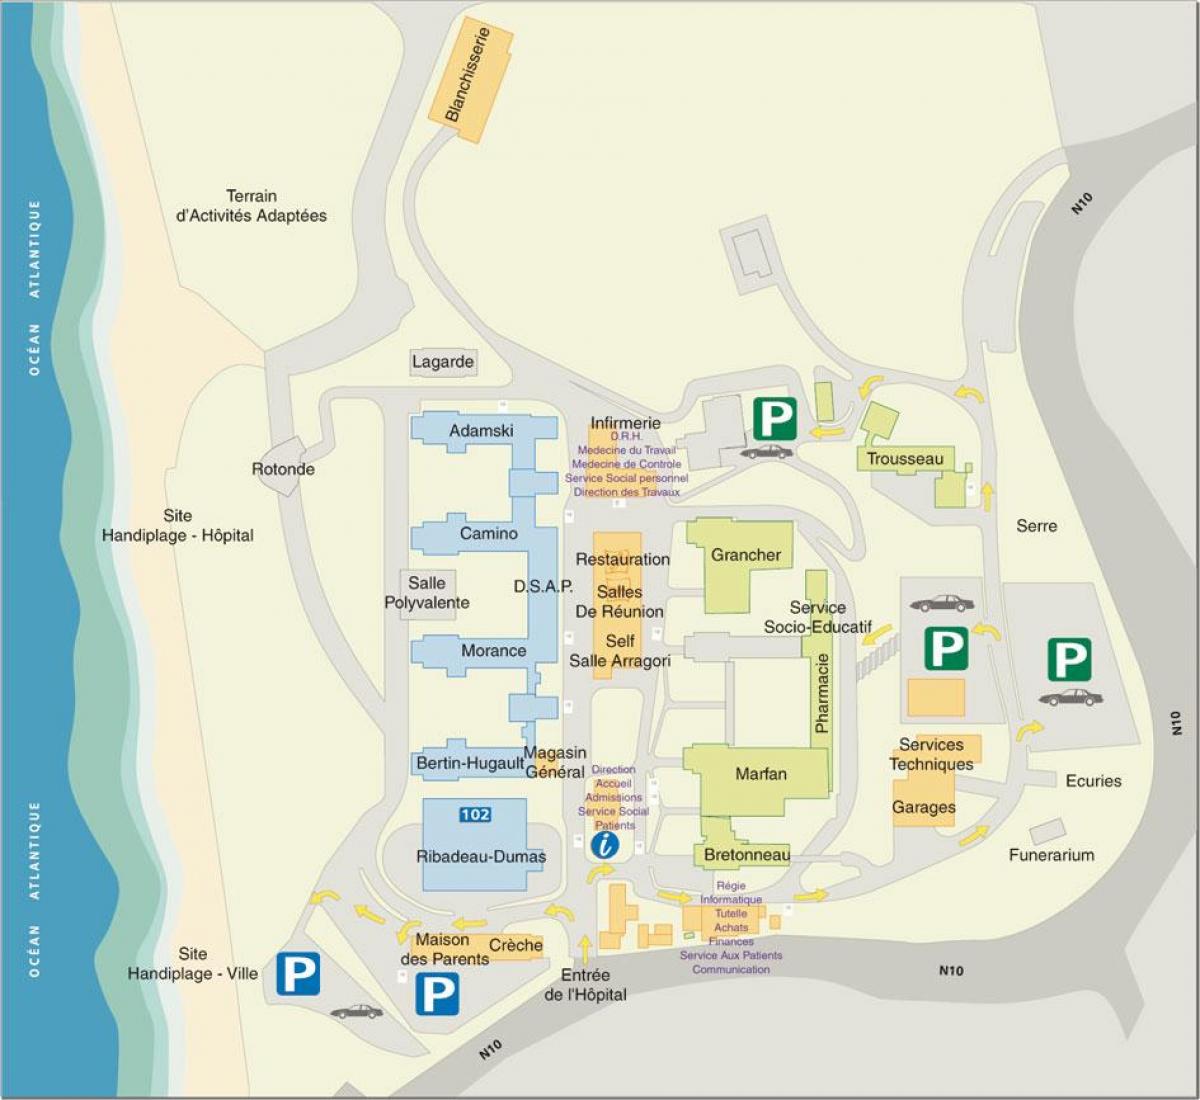 Peta dari Marin de Hendaye rumah sakit